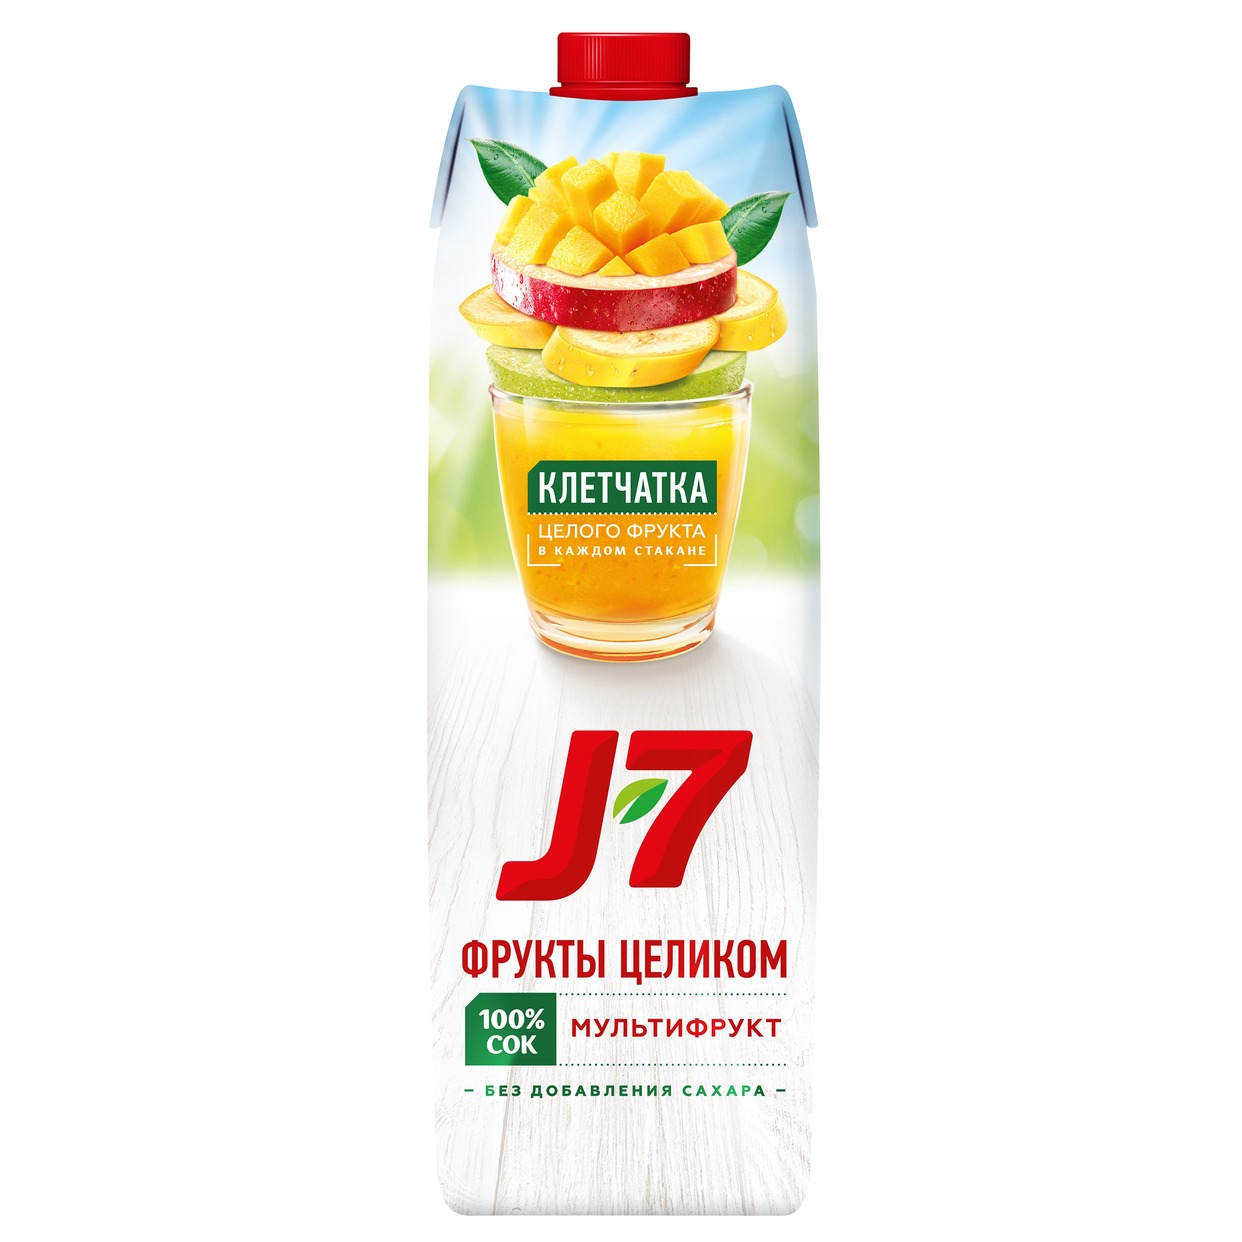 Сок мультифруктовый с мякотью "J7" 0,97л. для детского питания по акции в Пятерочке